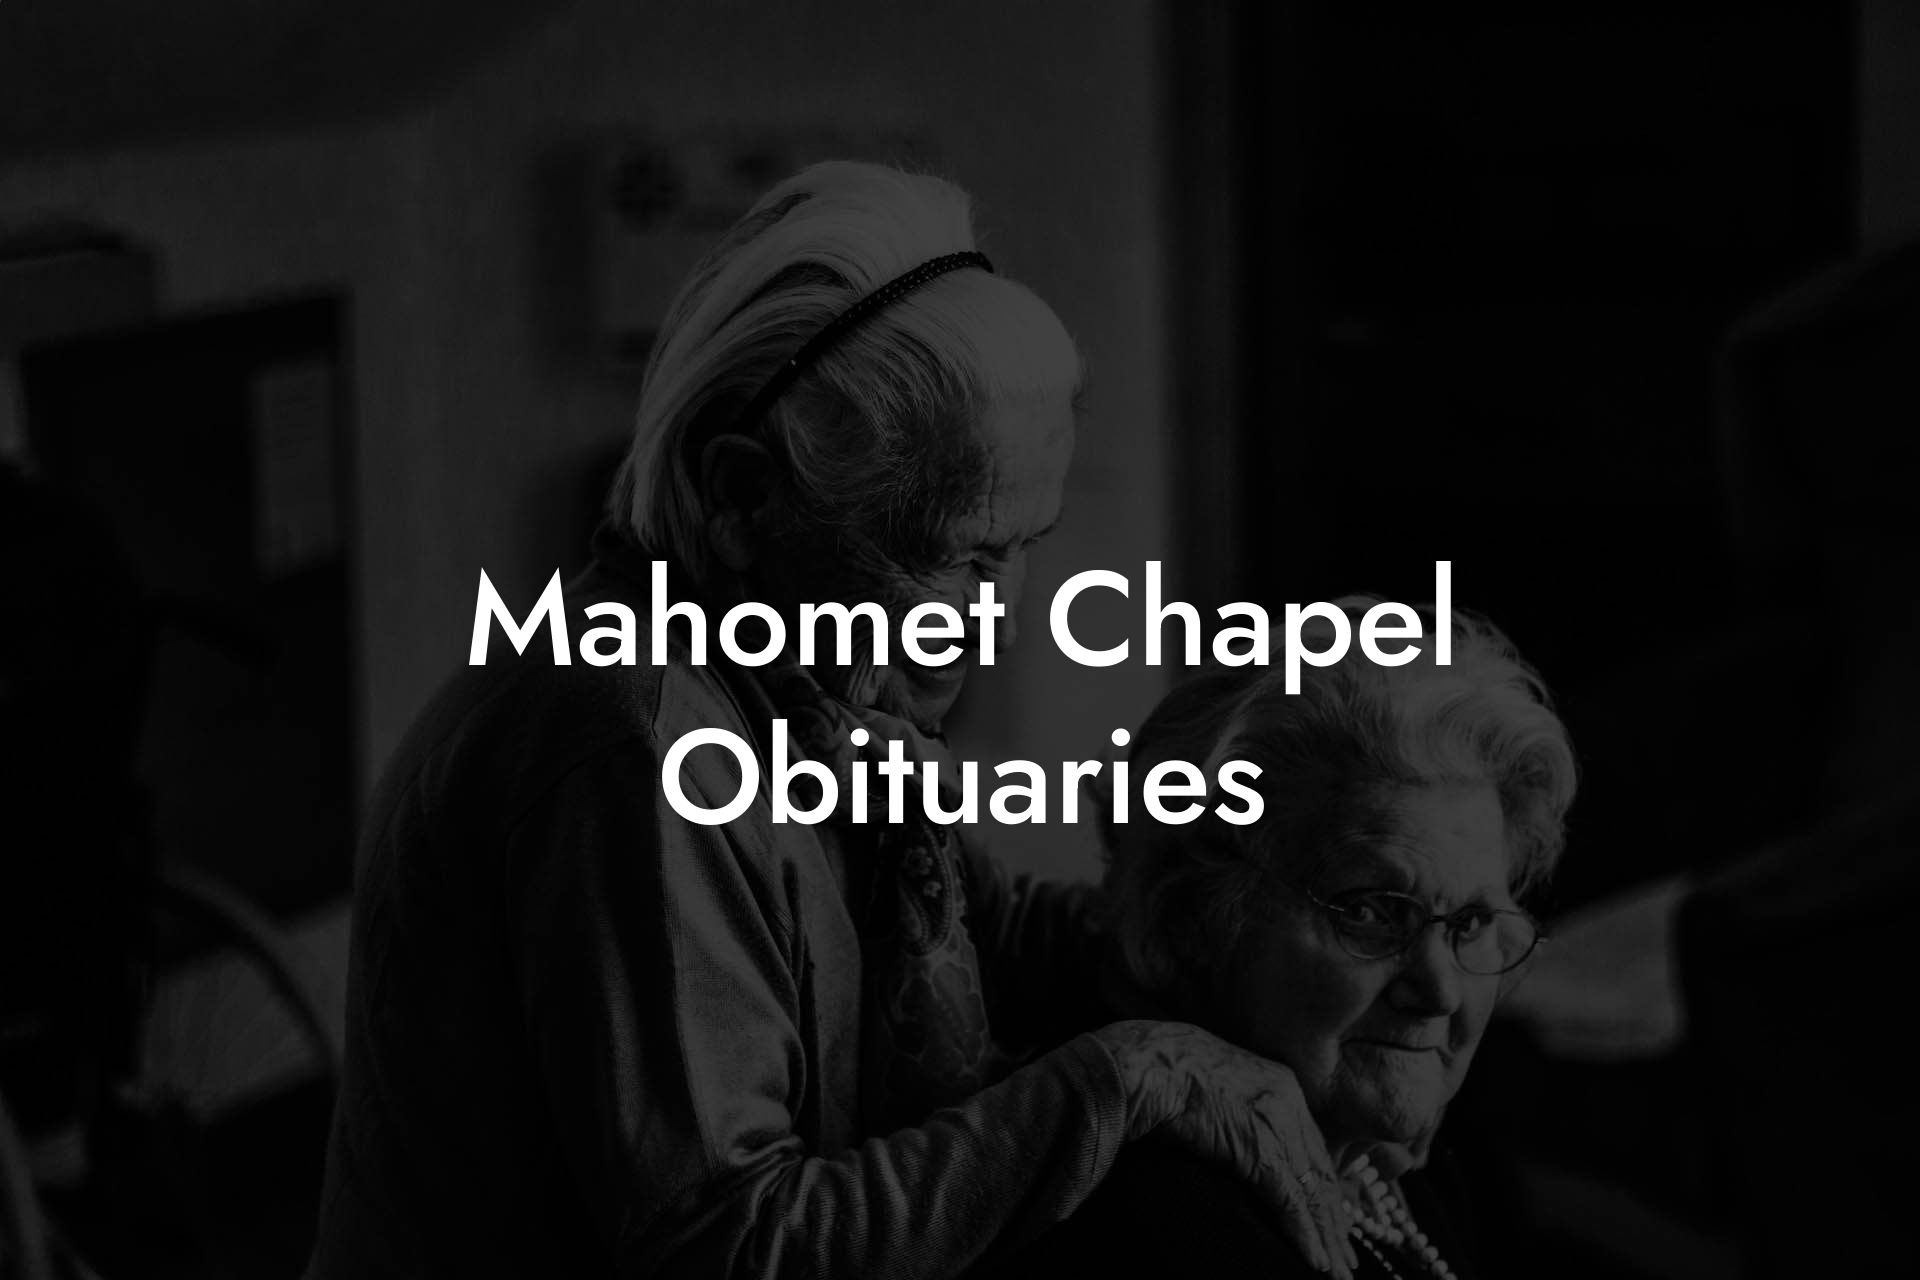 Mahomet Chapel Obituaries